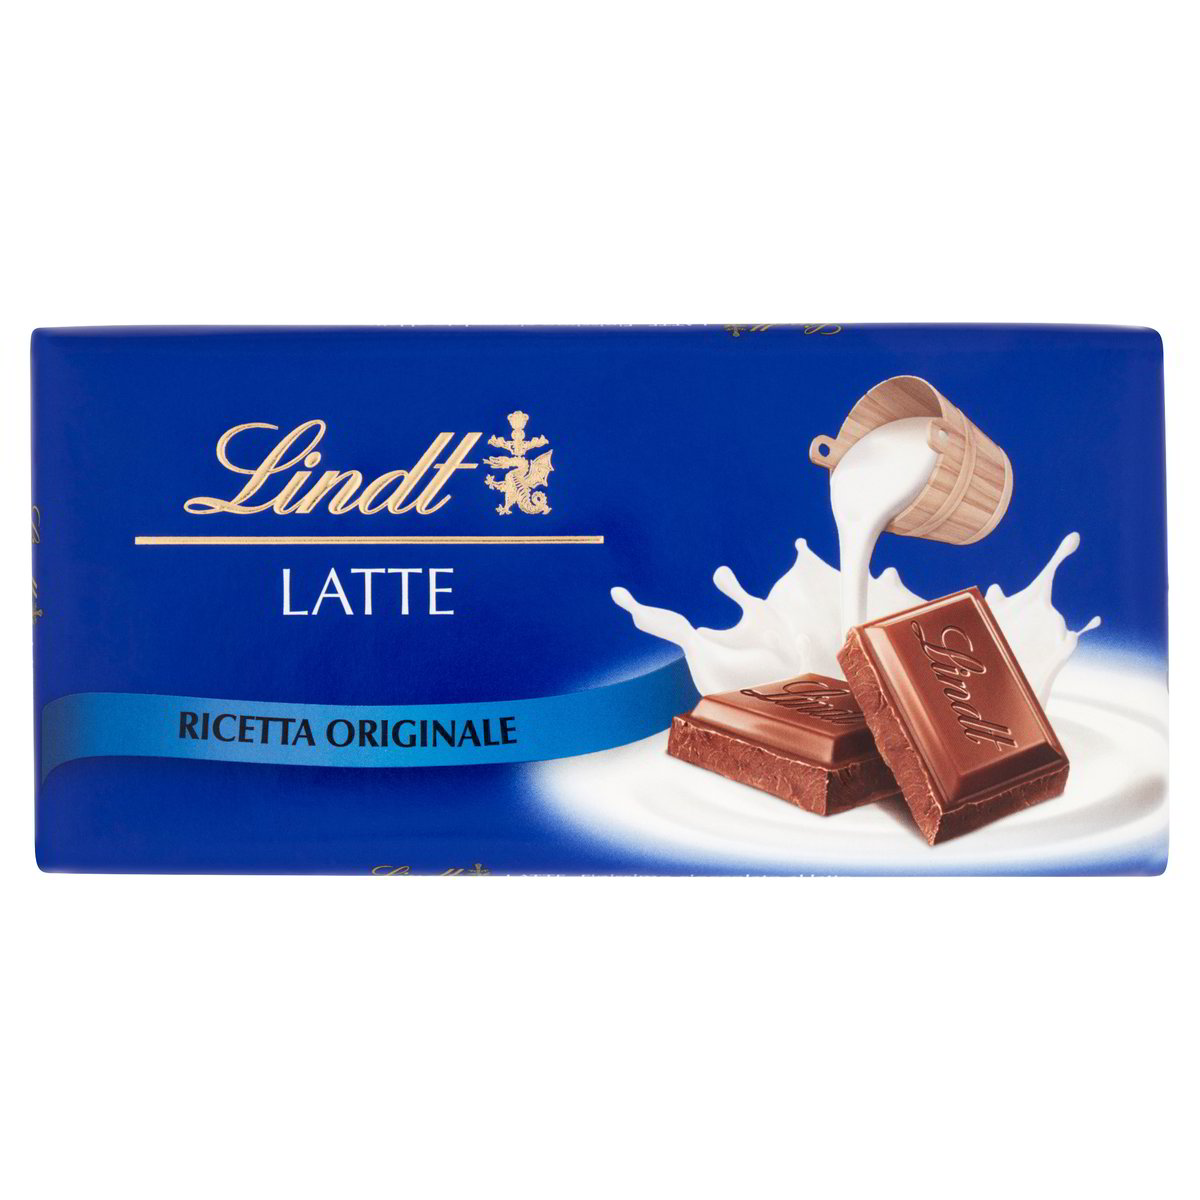 Cioccolato Al Latte